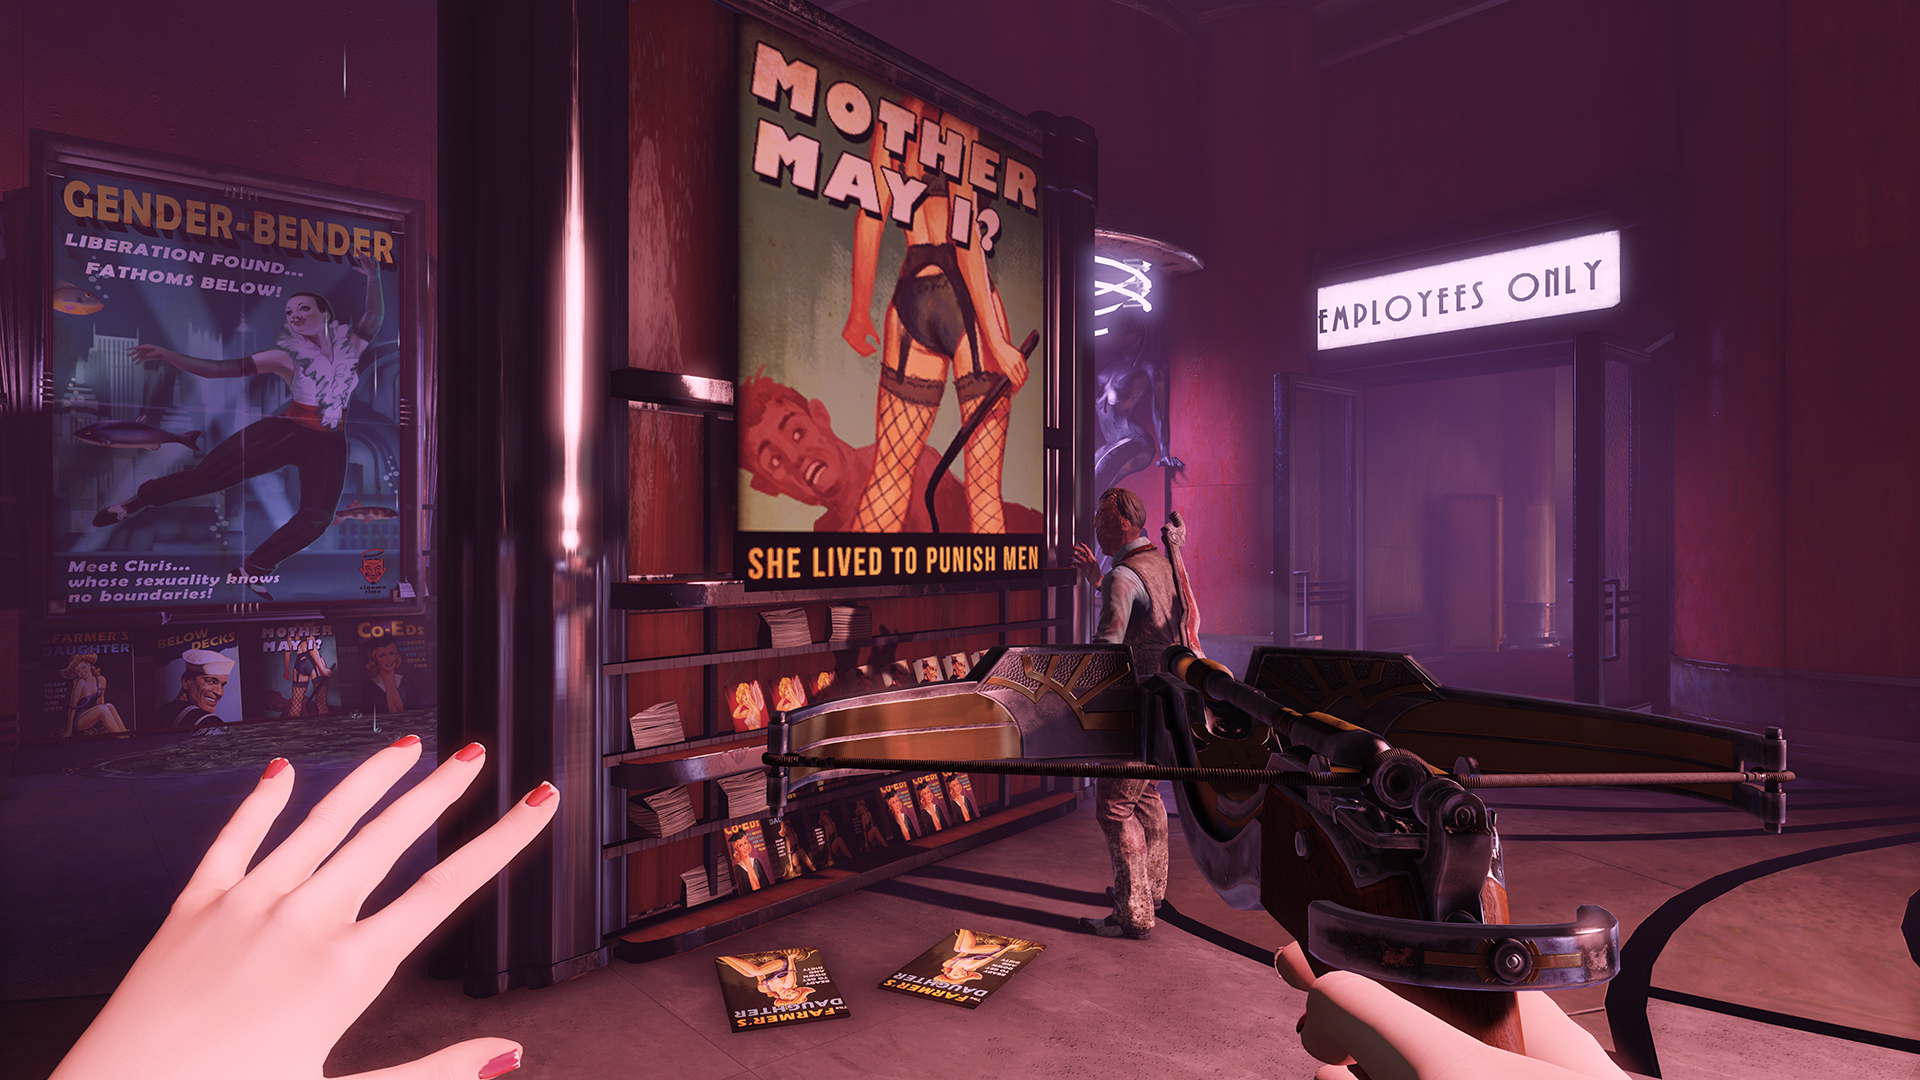 BioShock Infinite: Burial at Sea - Episode Two screenshot